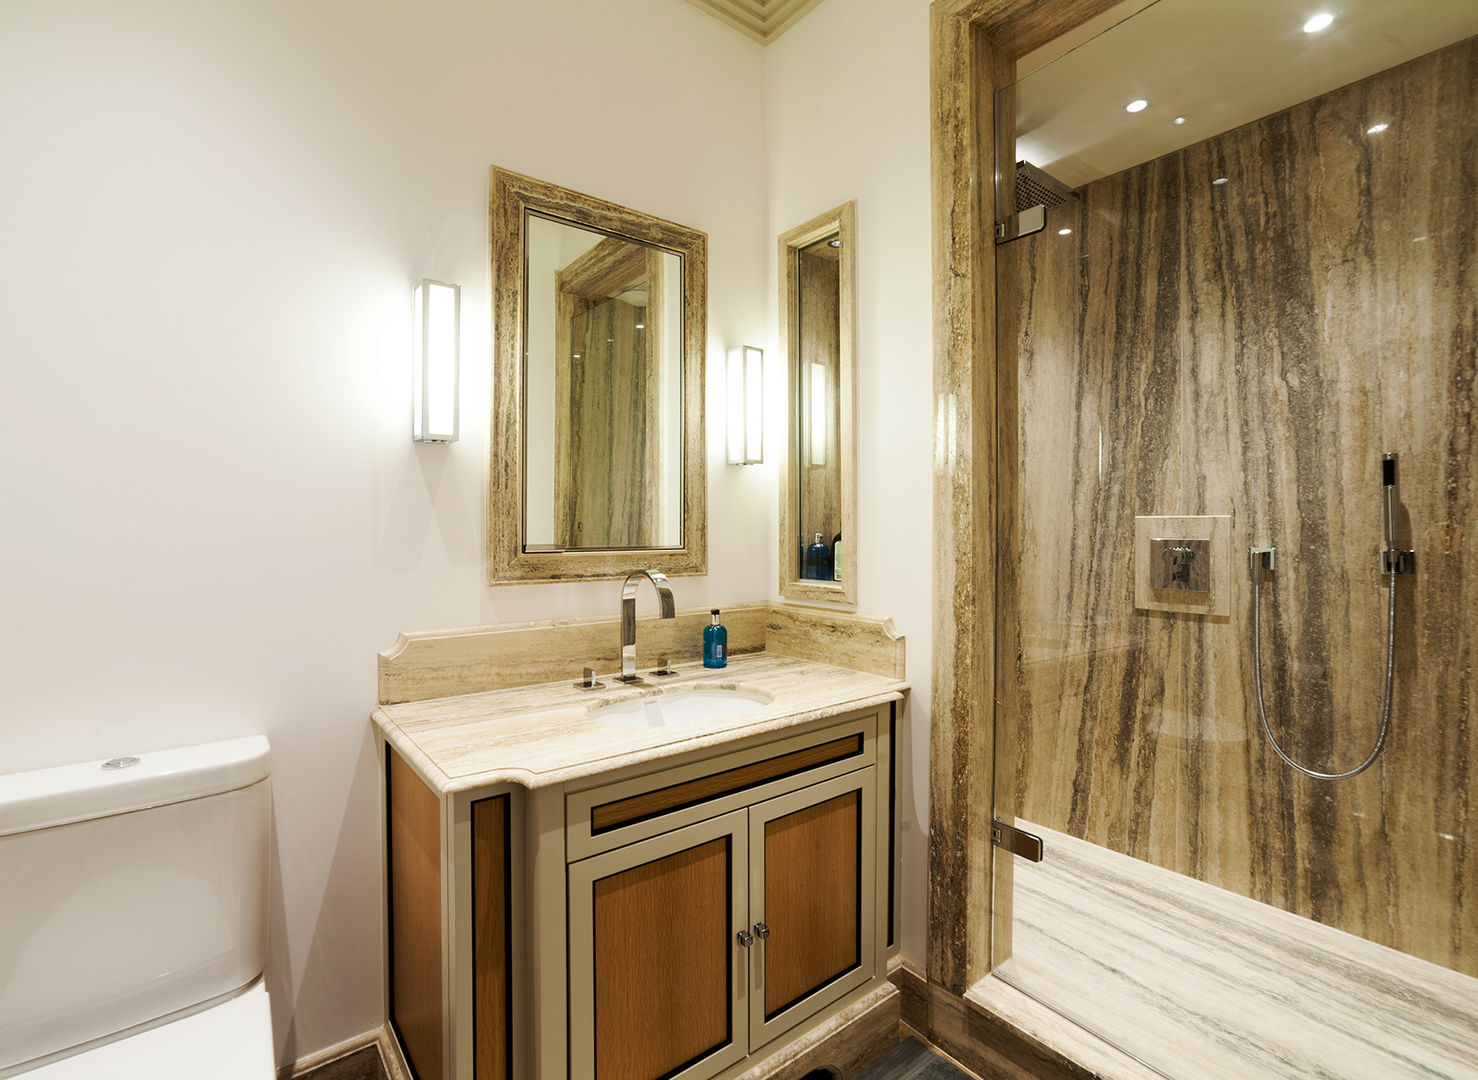 Bathroom Prestige Architects By Marco Braghiroli Modern Banyo bathroom,modern,lighting